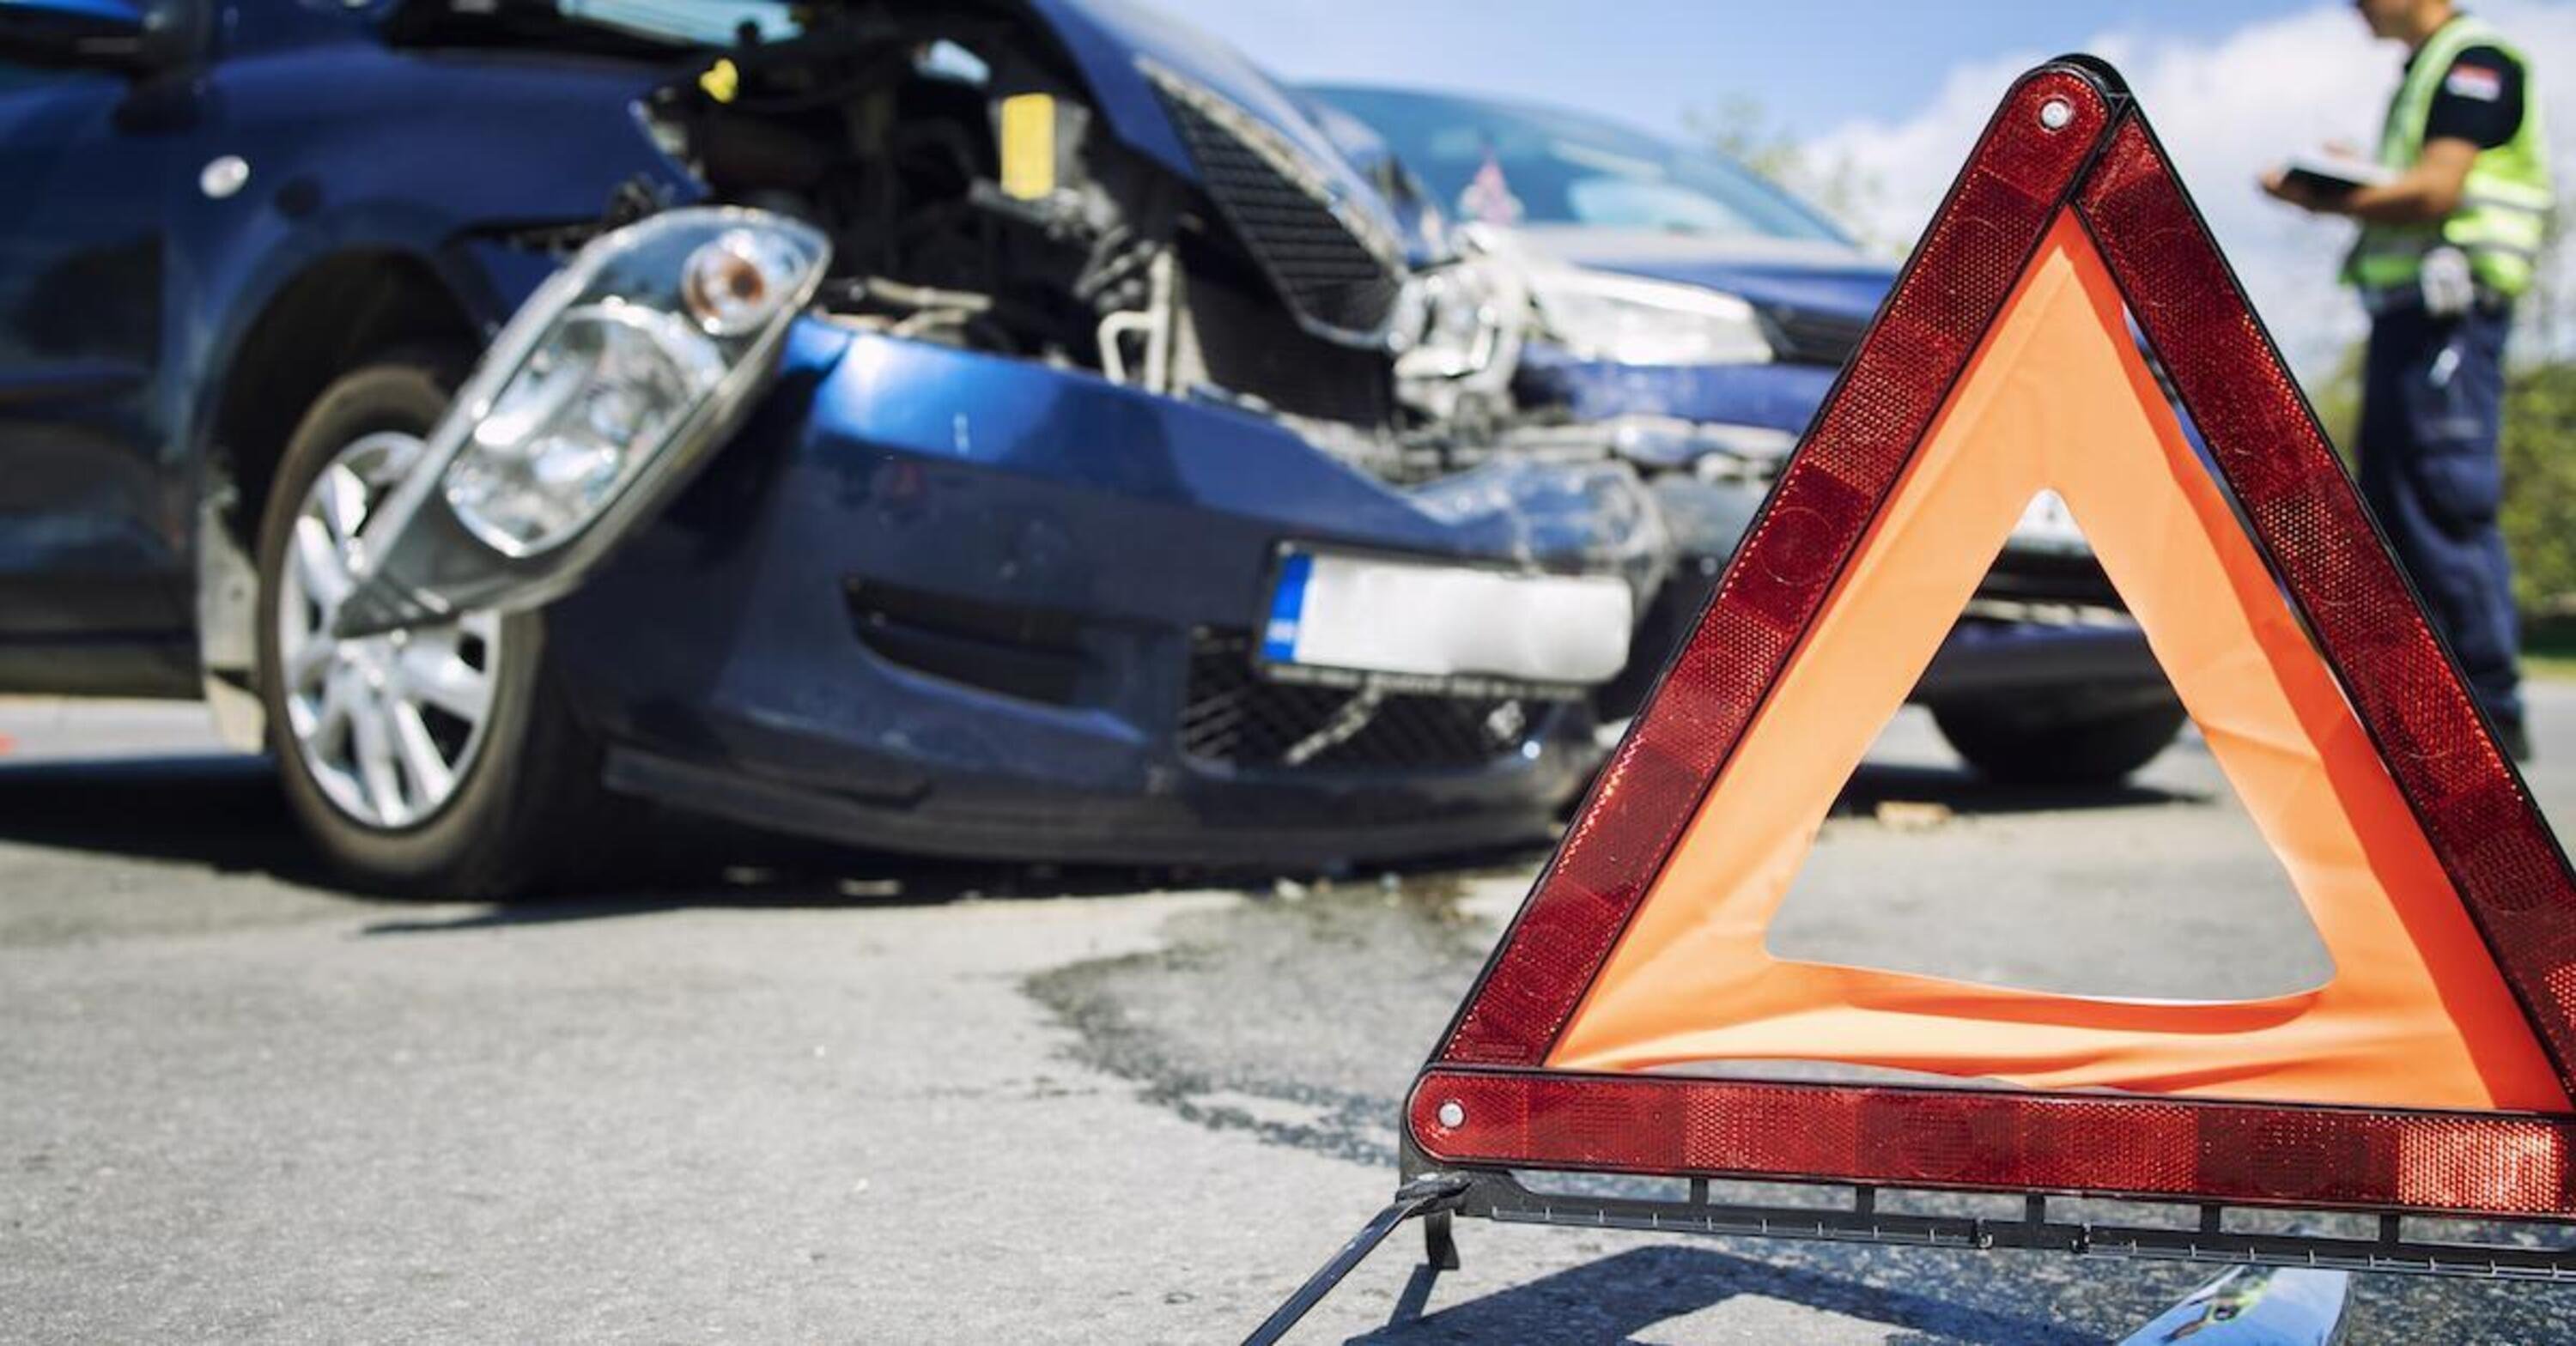 Assicurazioni: risarcimento danni da incidente stradale con lesioni gravi